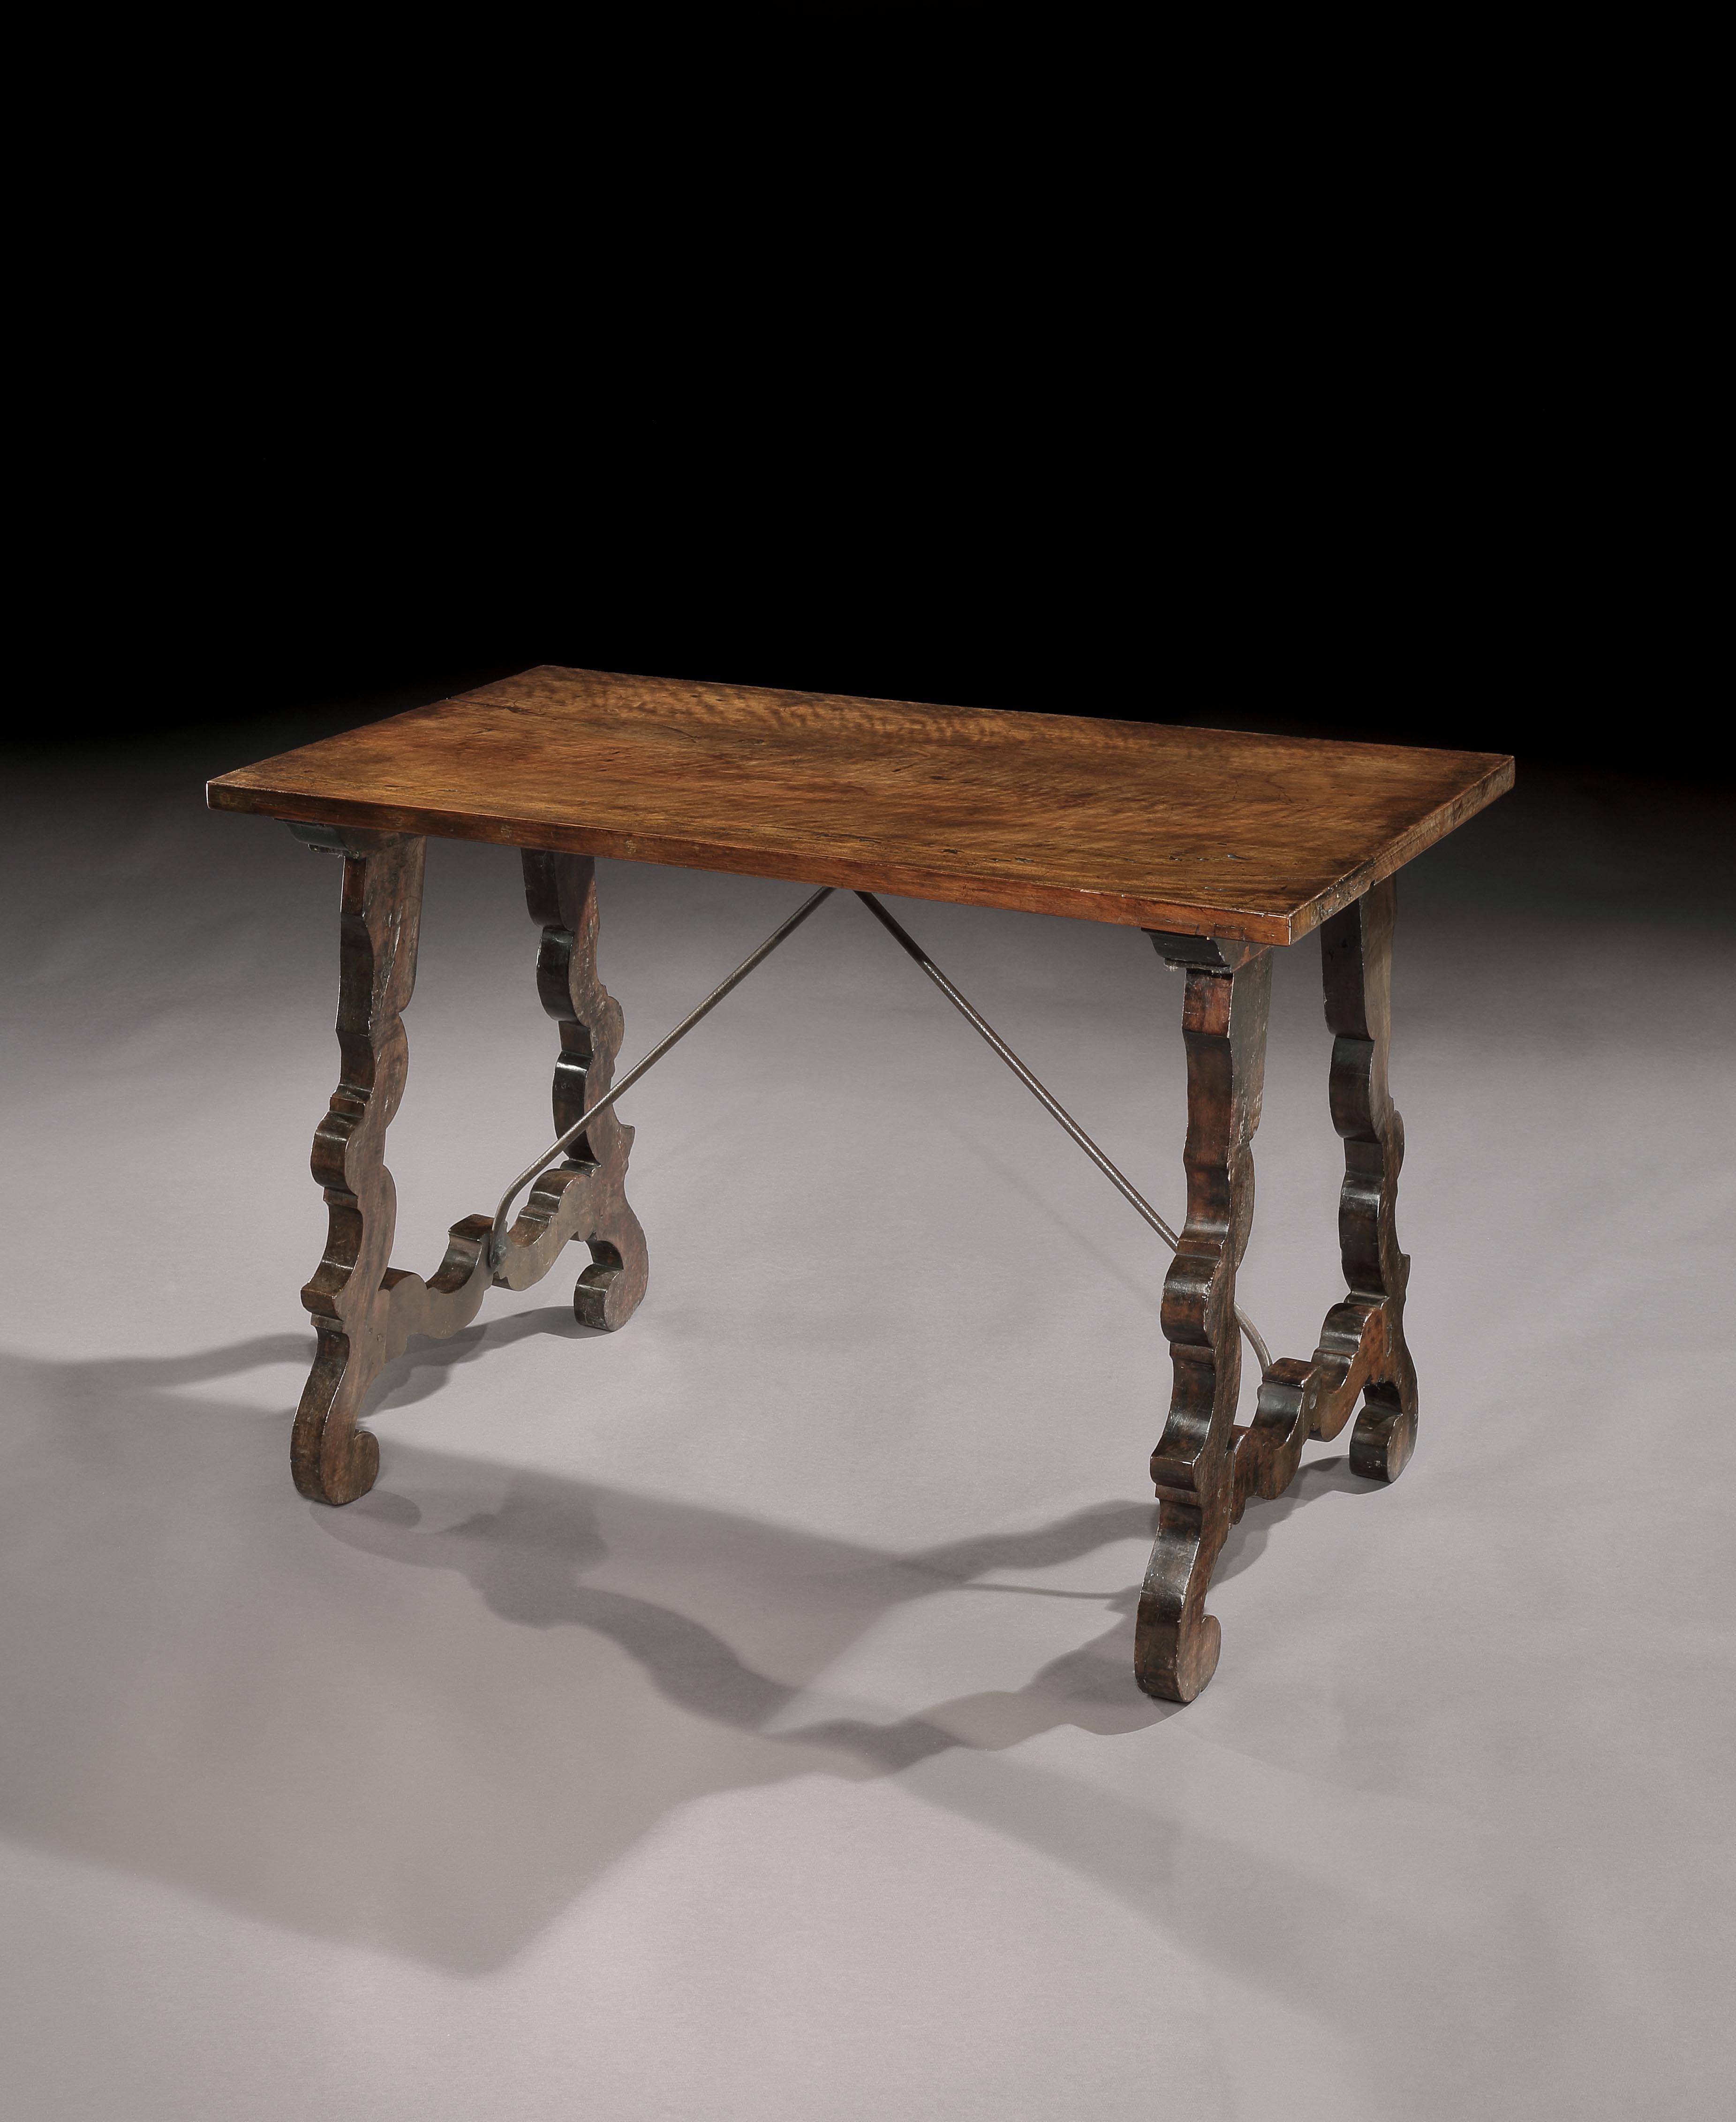 Rare cabinet ou table de chevet baroque, étroit, italien, en noyer.

Cette table aux proportions étroites et inhabituelles a probablement été conçue à l'origine comme support pour un meuble de table ou comme table d'appoint pour une armoire de